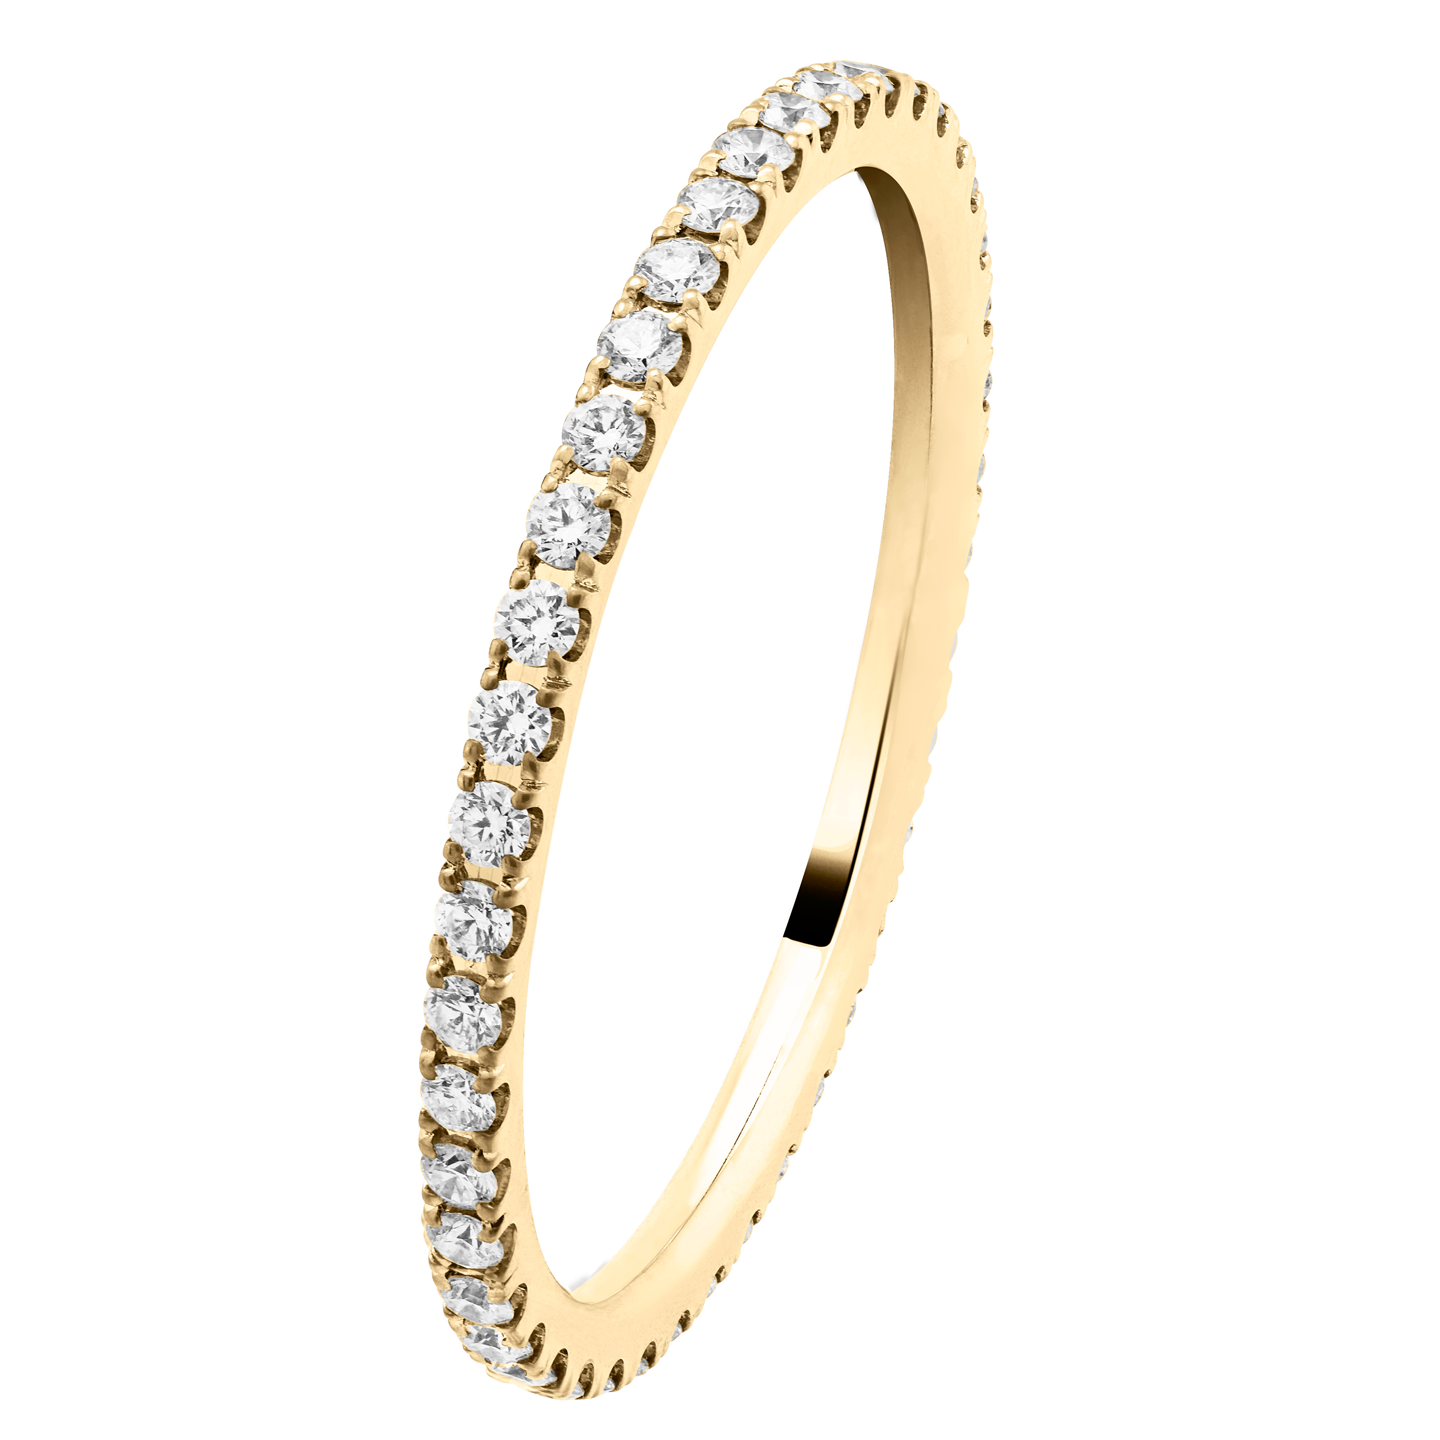 ゴールドリング派必見 有名ブランドで人気のゴールド結婚指輪 コラム マイナビウエディング プレミアムジュエリー